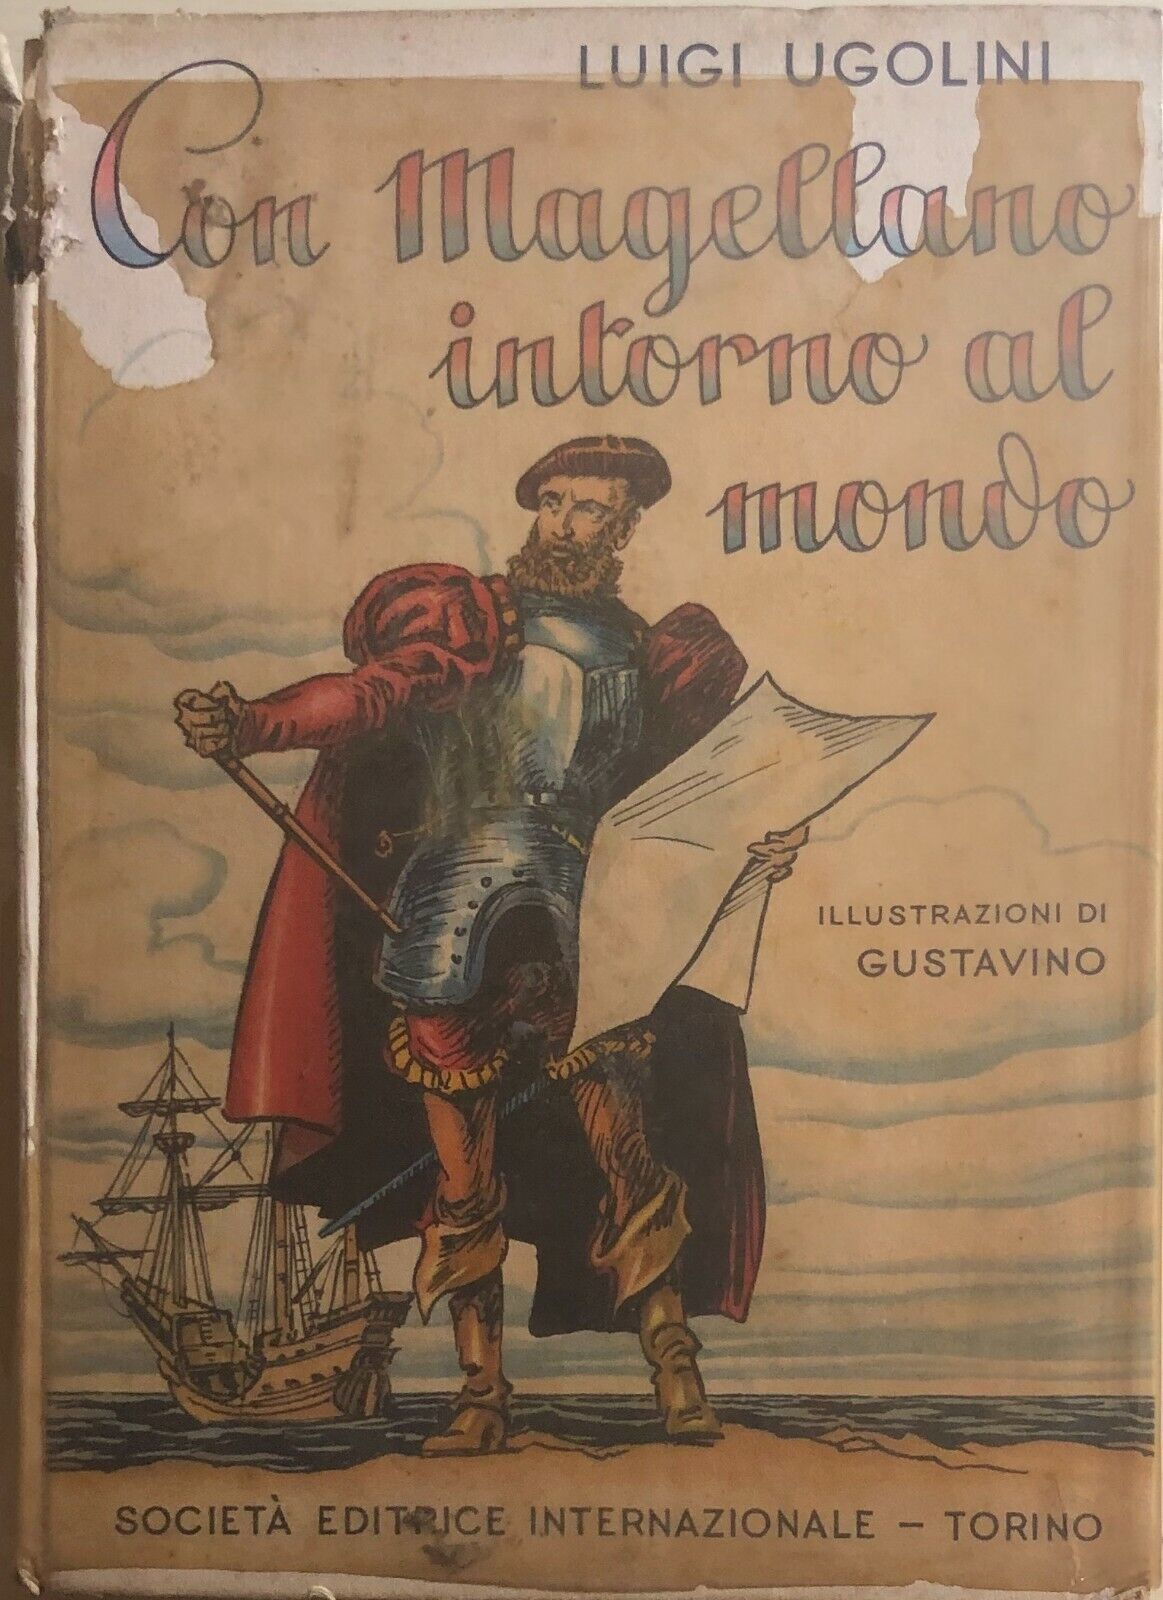 Con Magellano intorno al mondo di Luigi Ugolini, 1955, Societ? Editrice Internaz